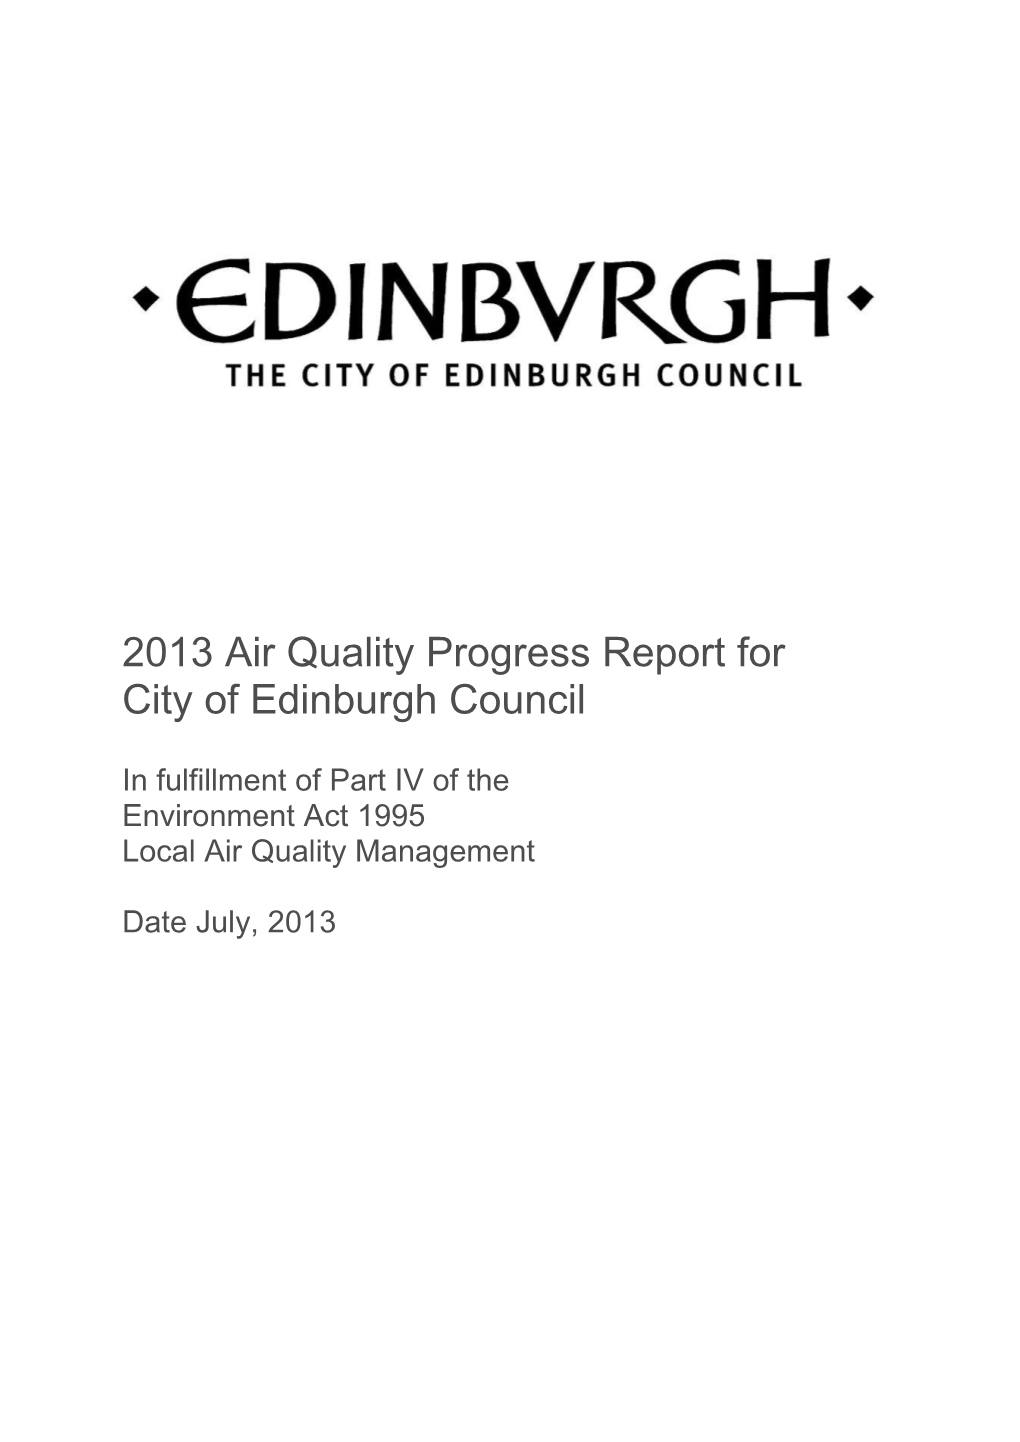 2013 Air Quality Progress Report for City of Edinburgh Council